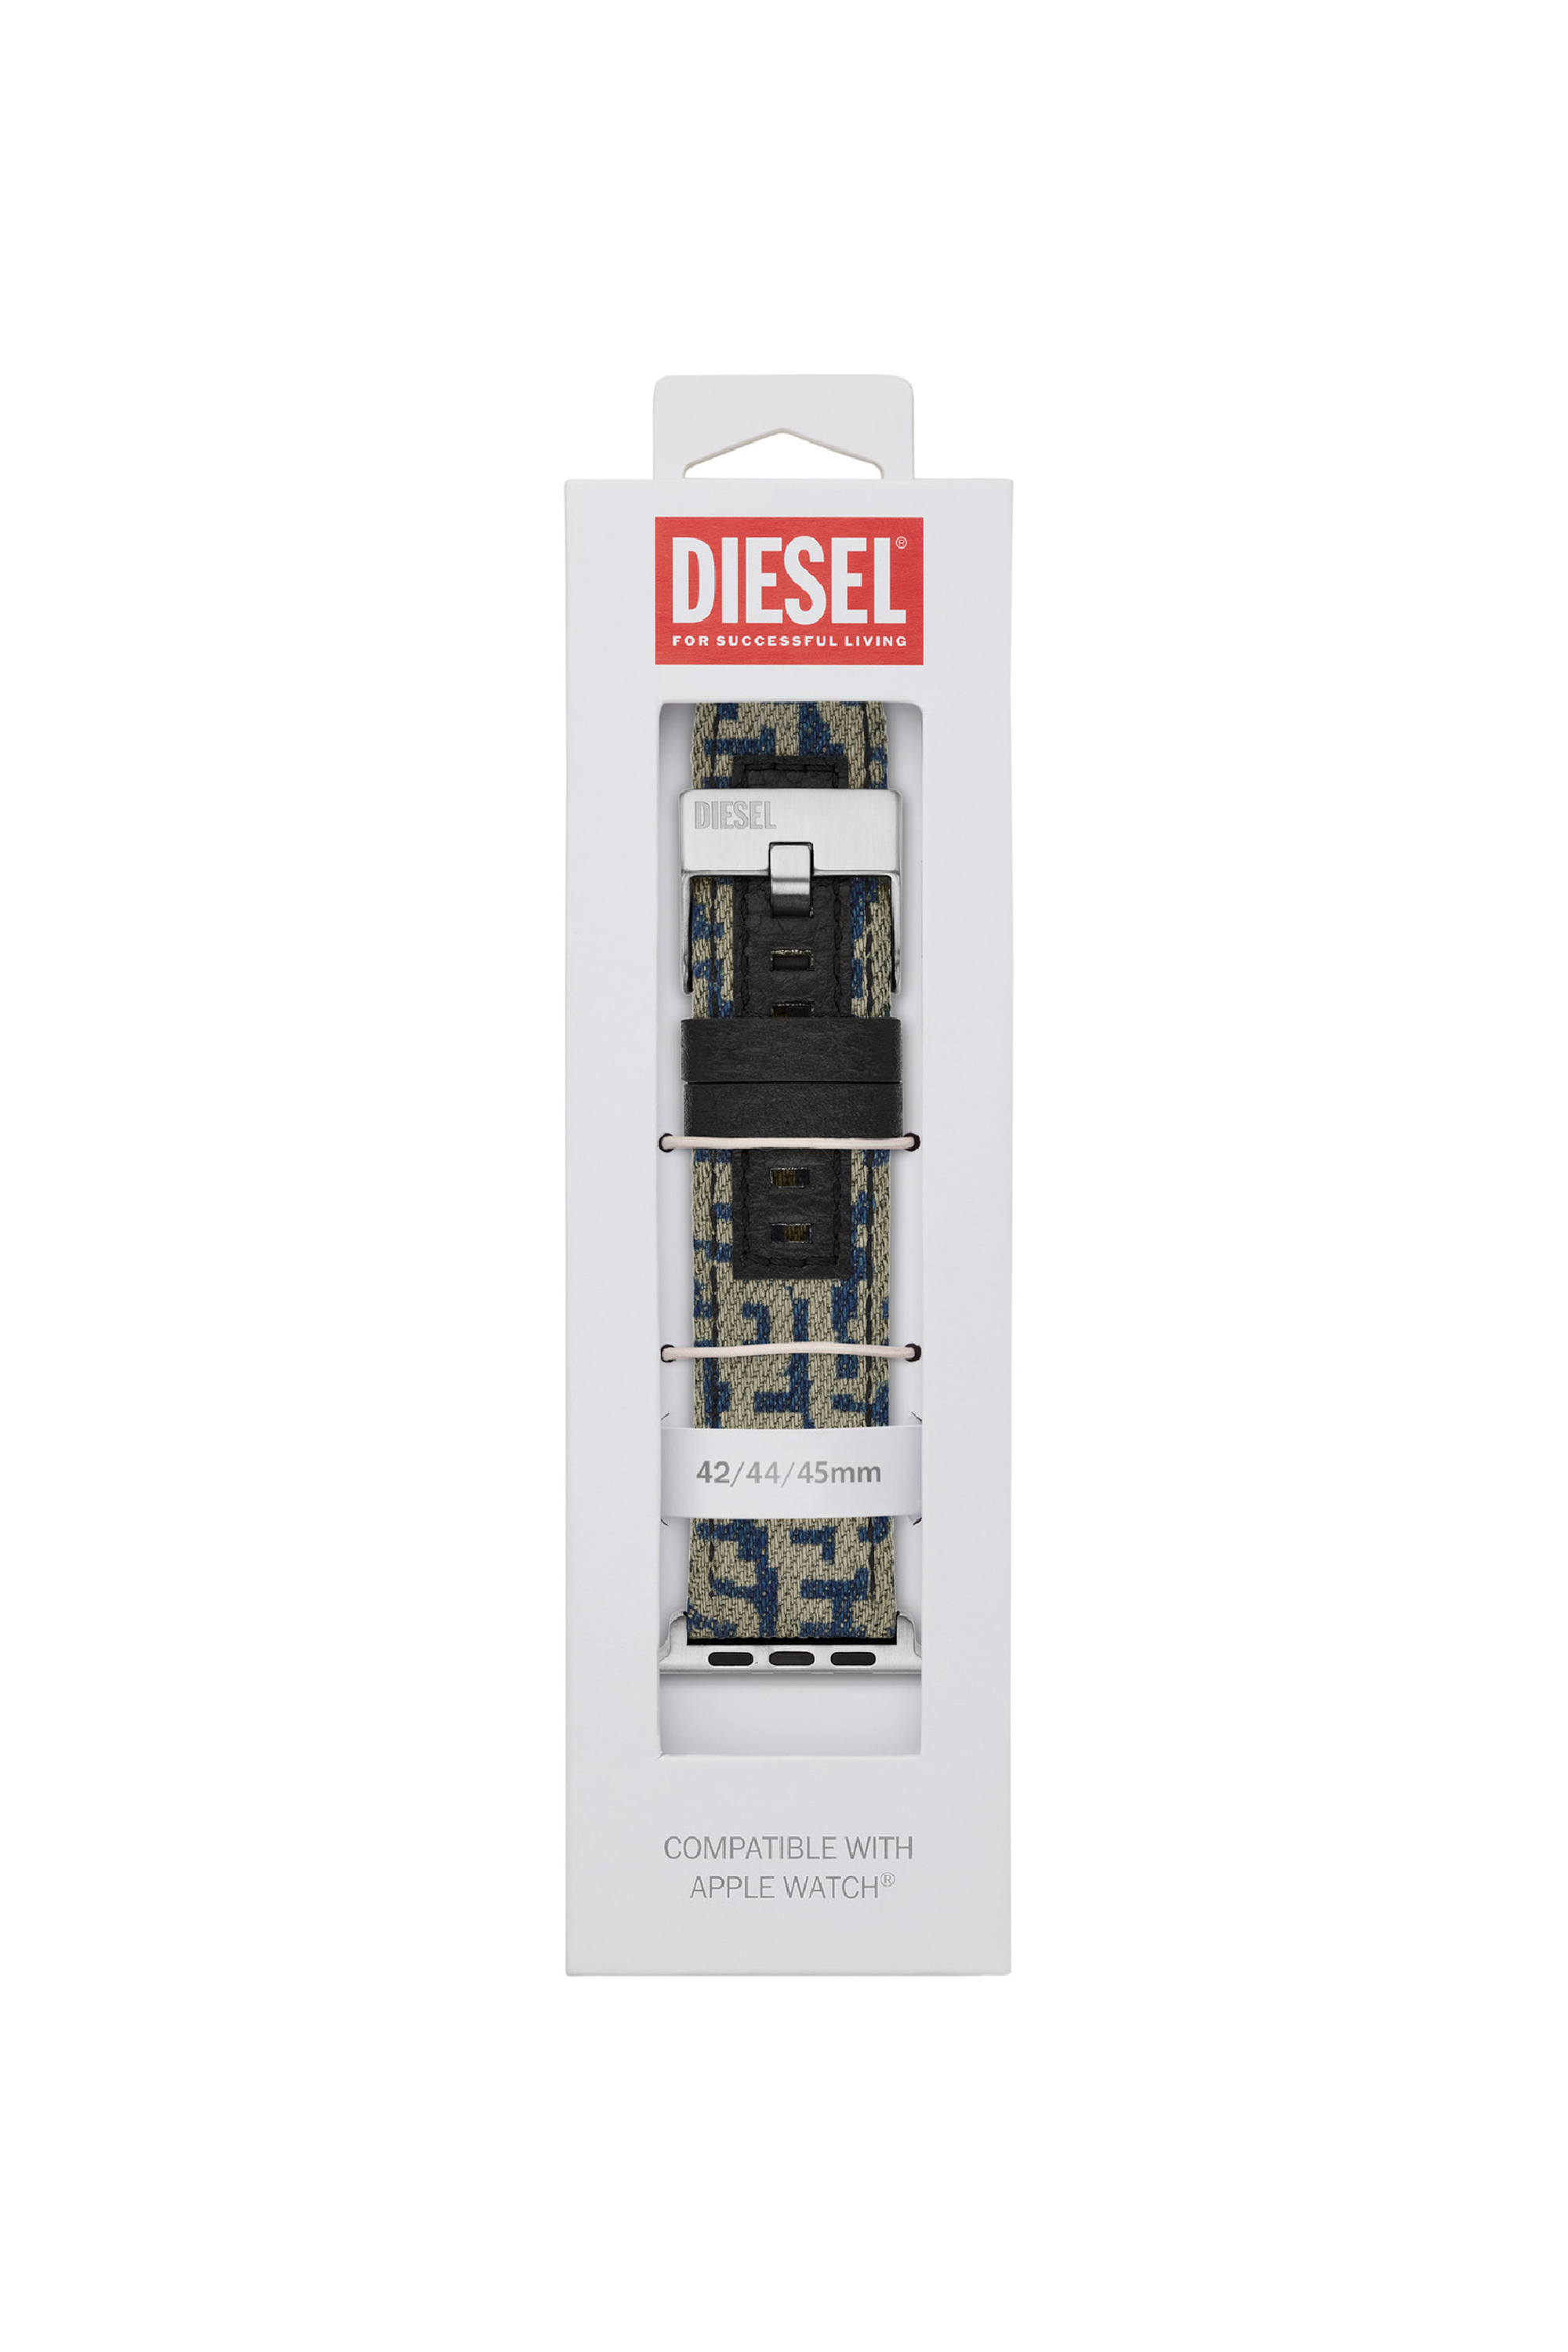 Diesel - DSS0013, Blu - Image 2